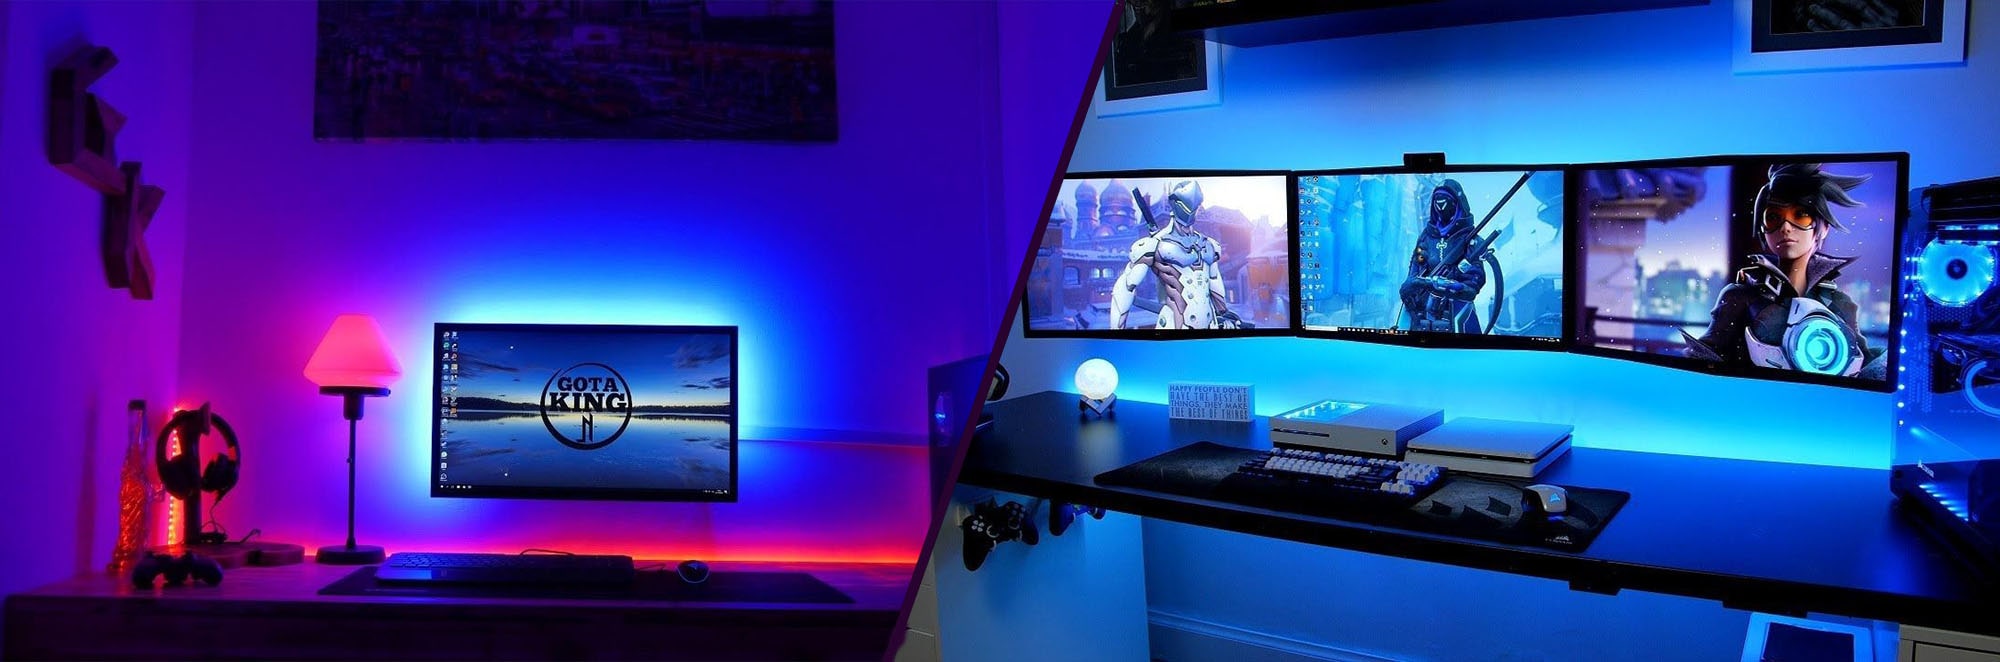 Sublimez votre setup gaming grâce aux LED